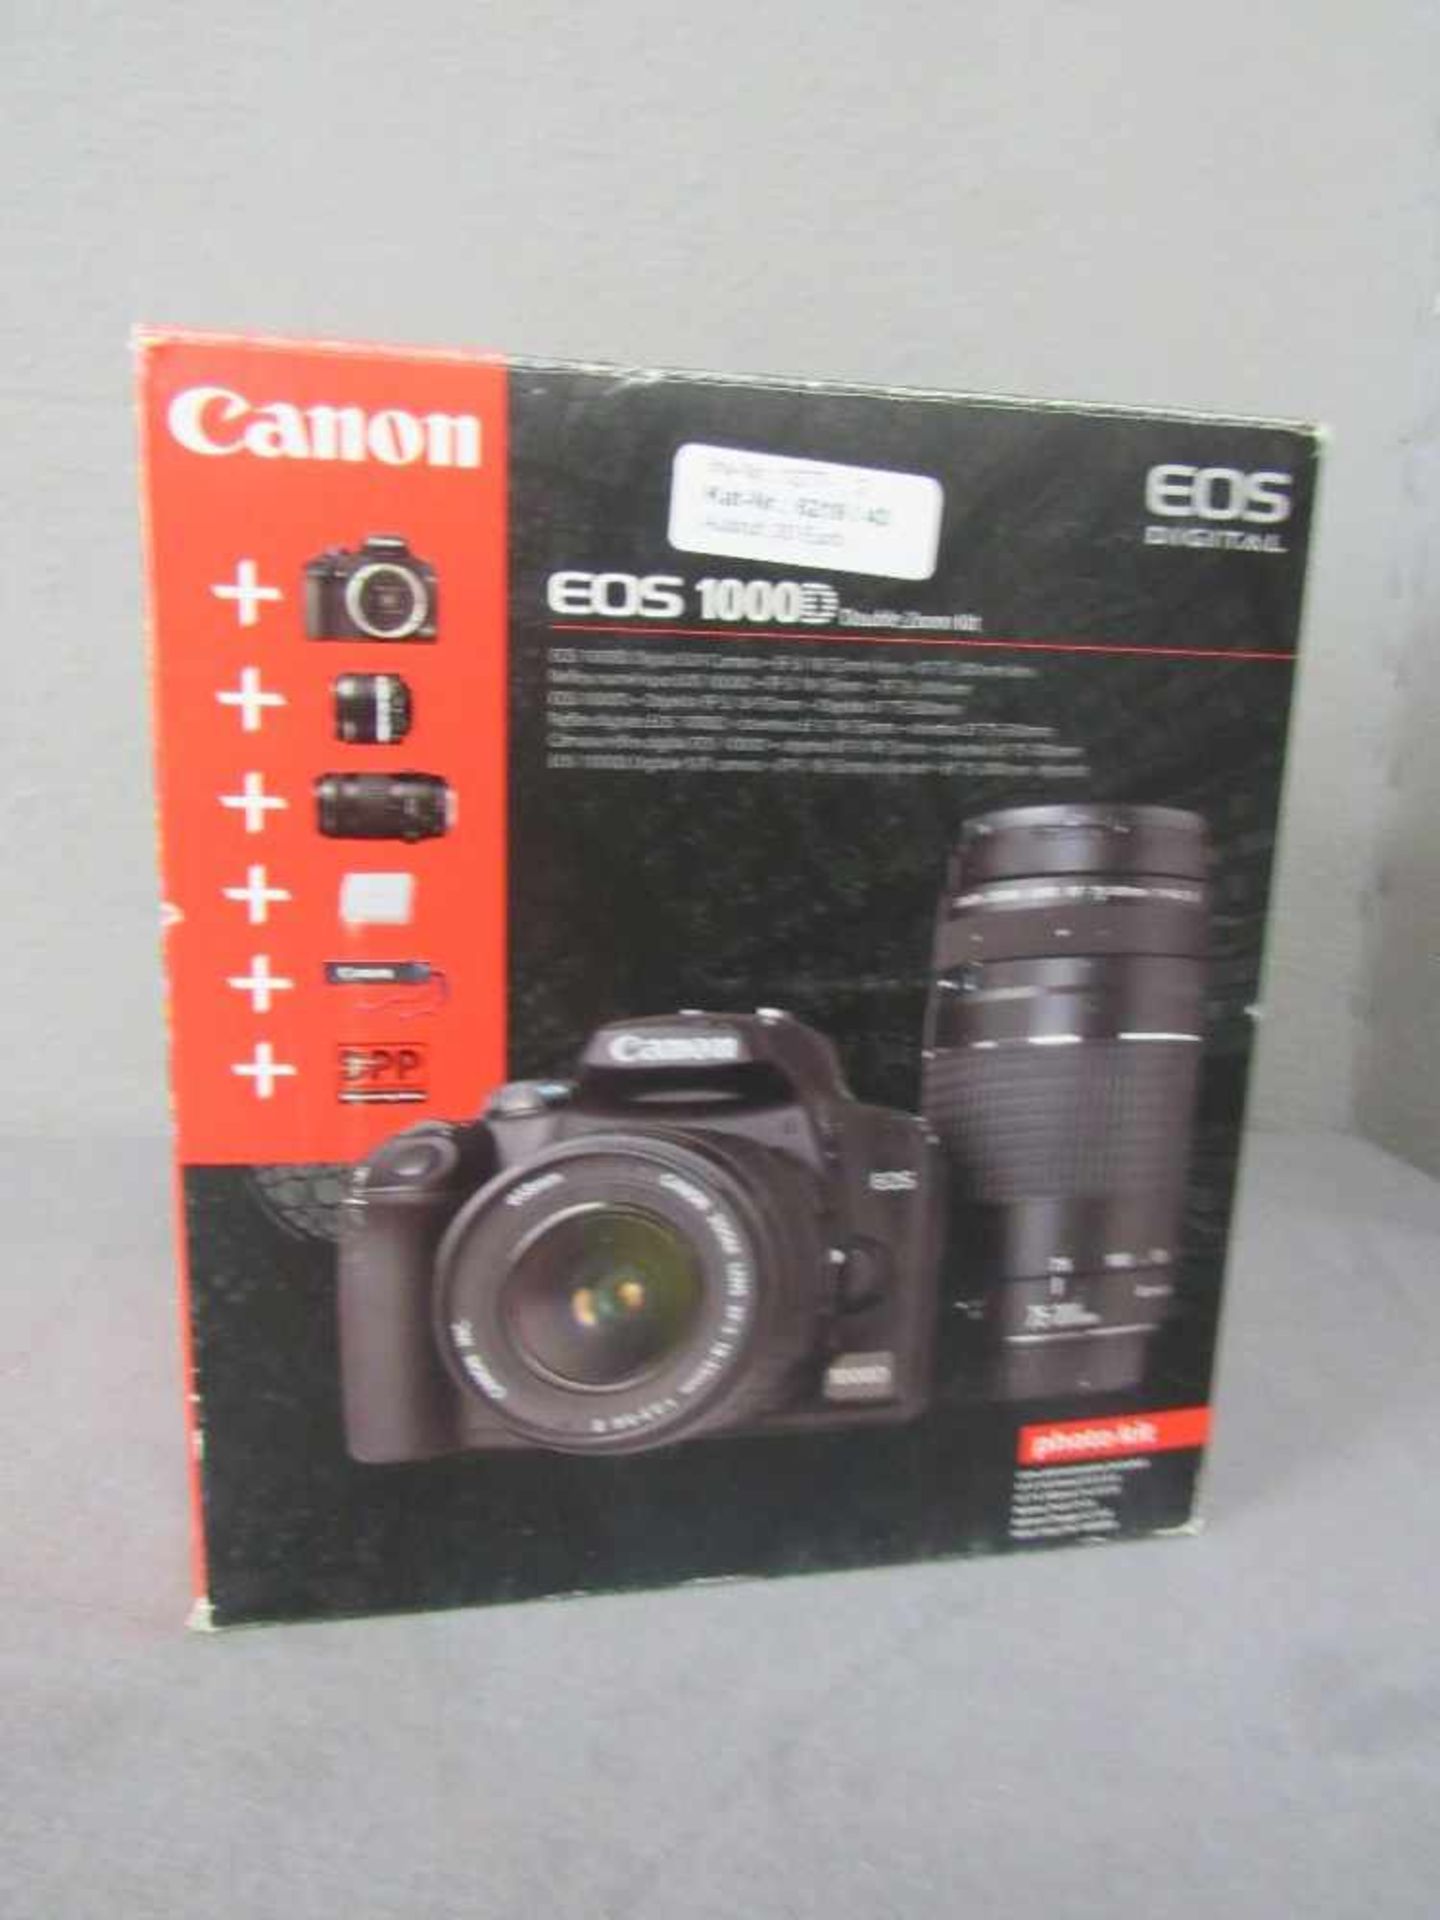 Fotoapperat Canon Eos 1000D + Objektiv 70-300 komplett mit Zubehör- - -20.00 % buyer's premium on - Bild 2 aus 2